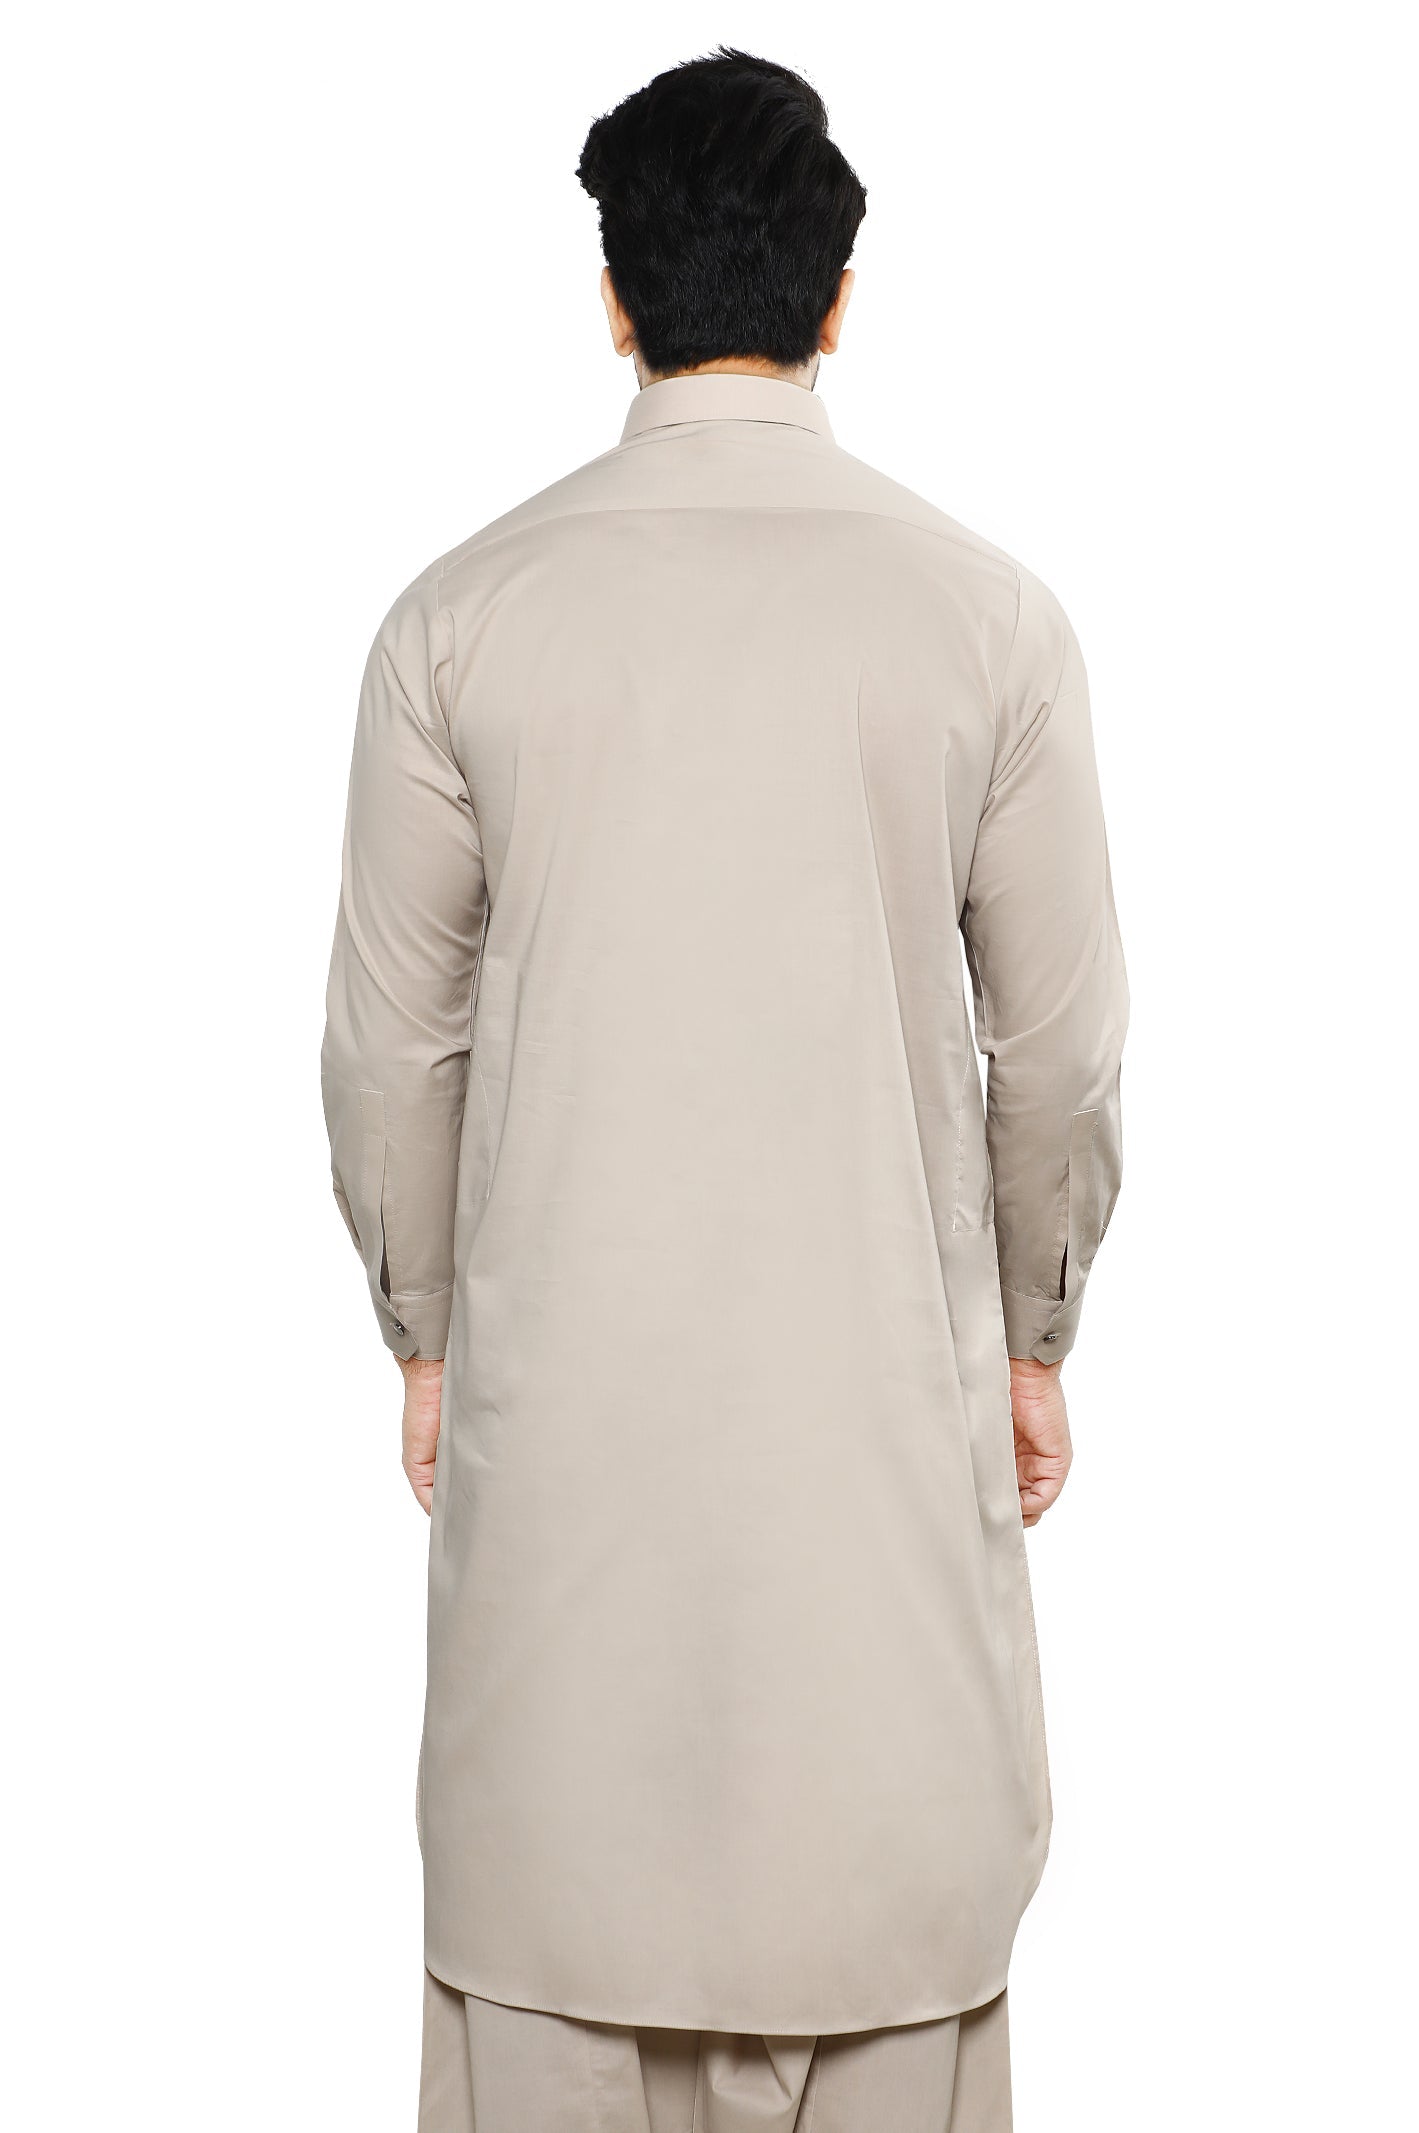 Formal Shalwar Suit for Men SKU: EG3043-BEIDGE - Diners